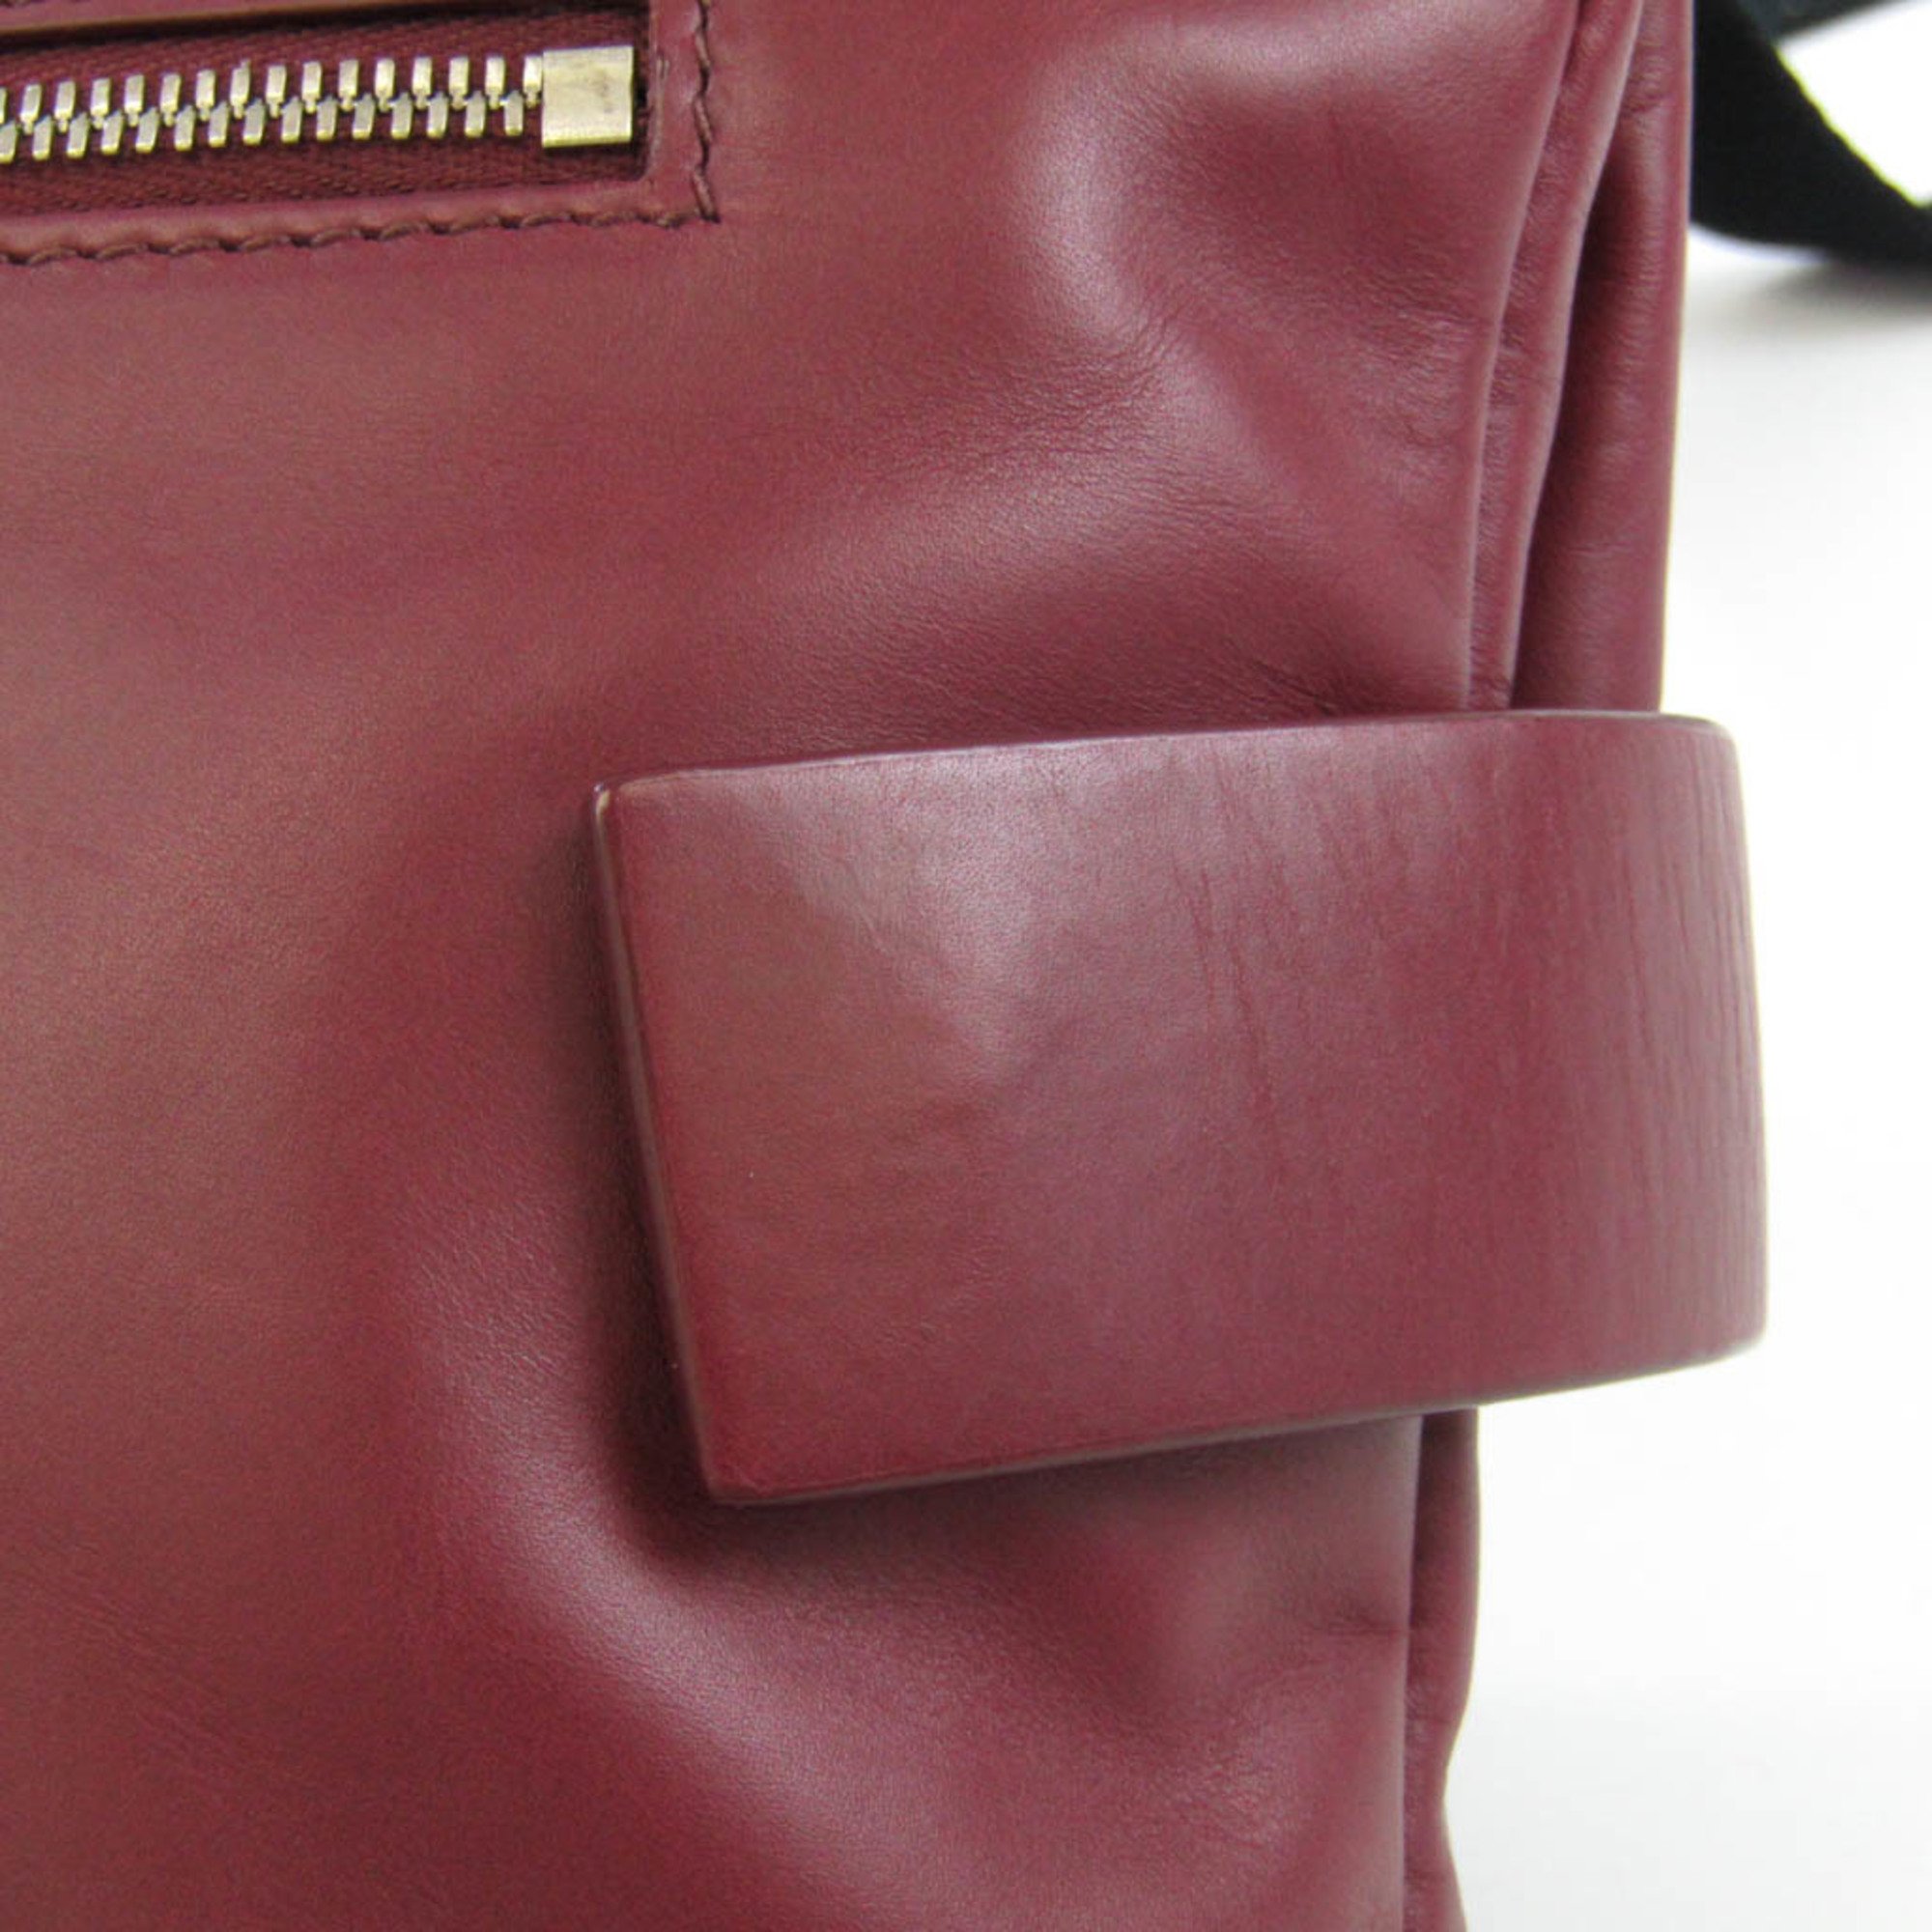 Bottega Veneta Unisex Leather Shoulder Bag Red Color,Wine